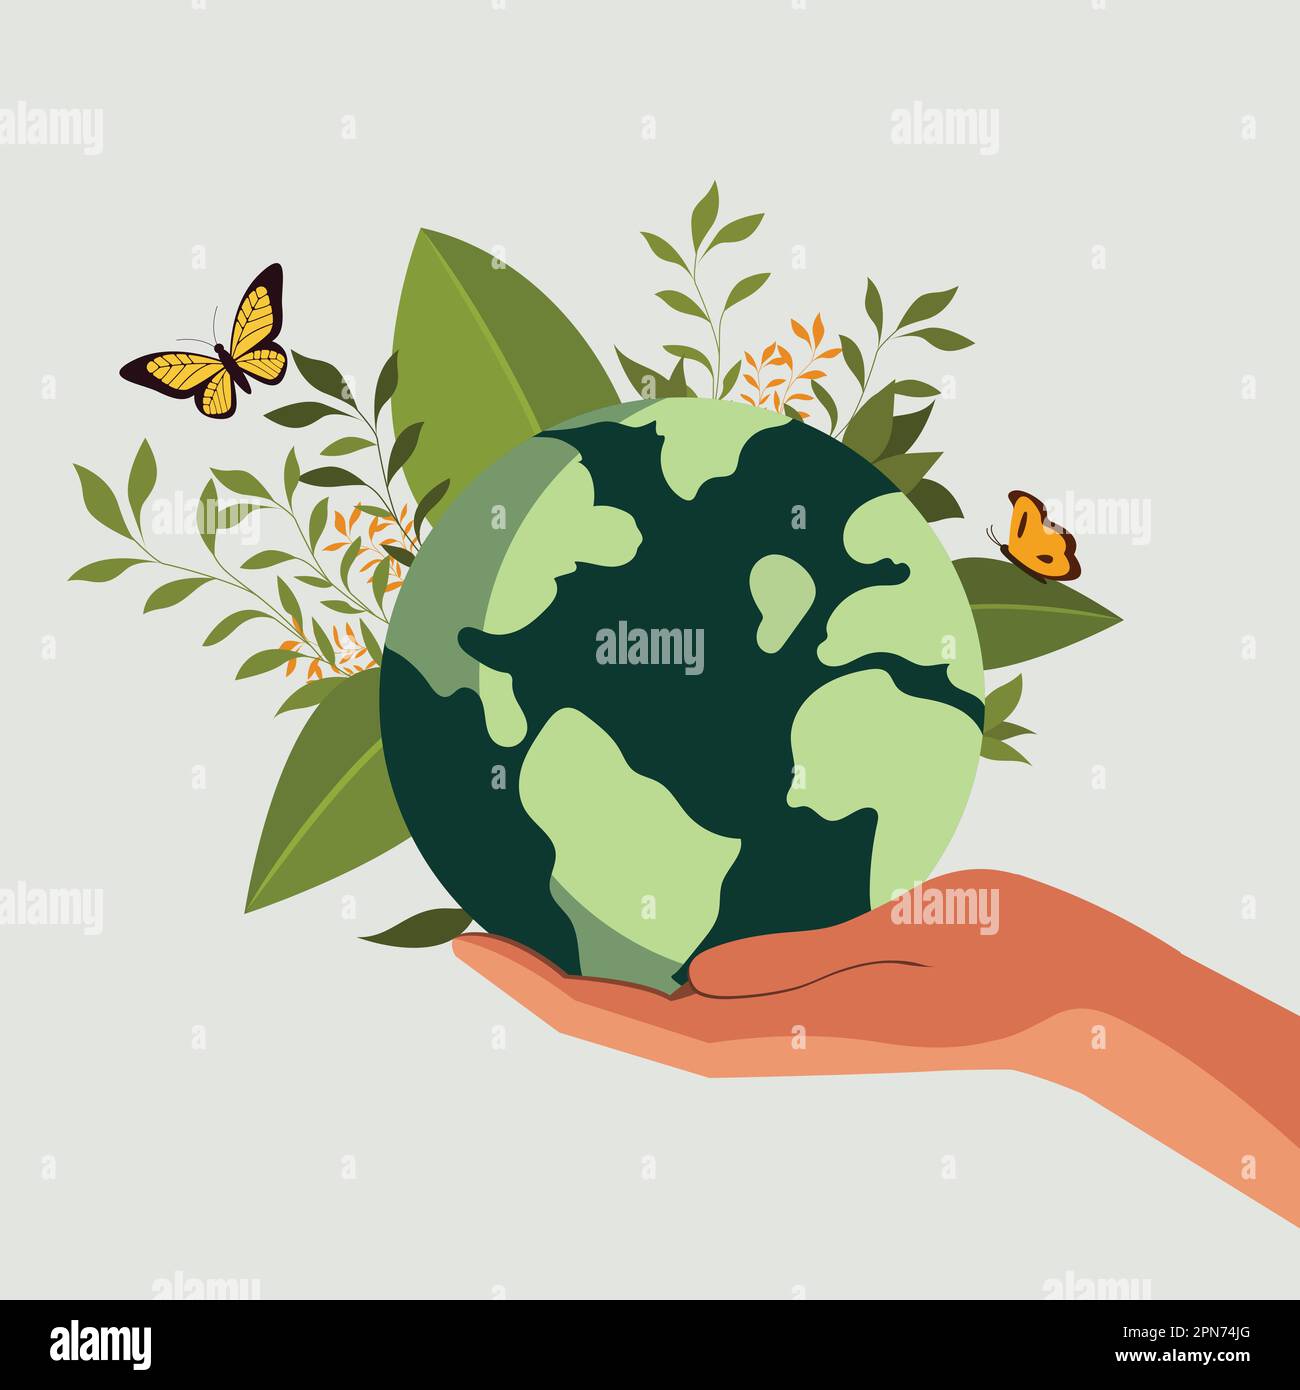 La main humaine protège le globe terrestre avec des feuilles, papillons sur fond gris. Illustration de Vecteur